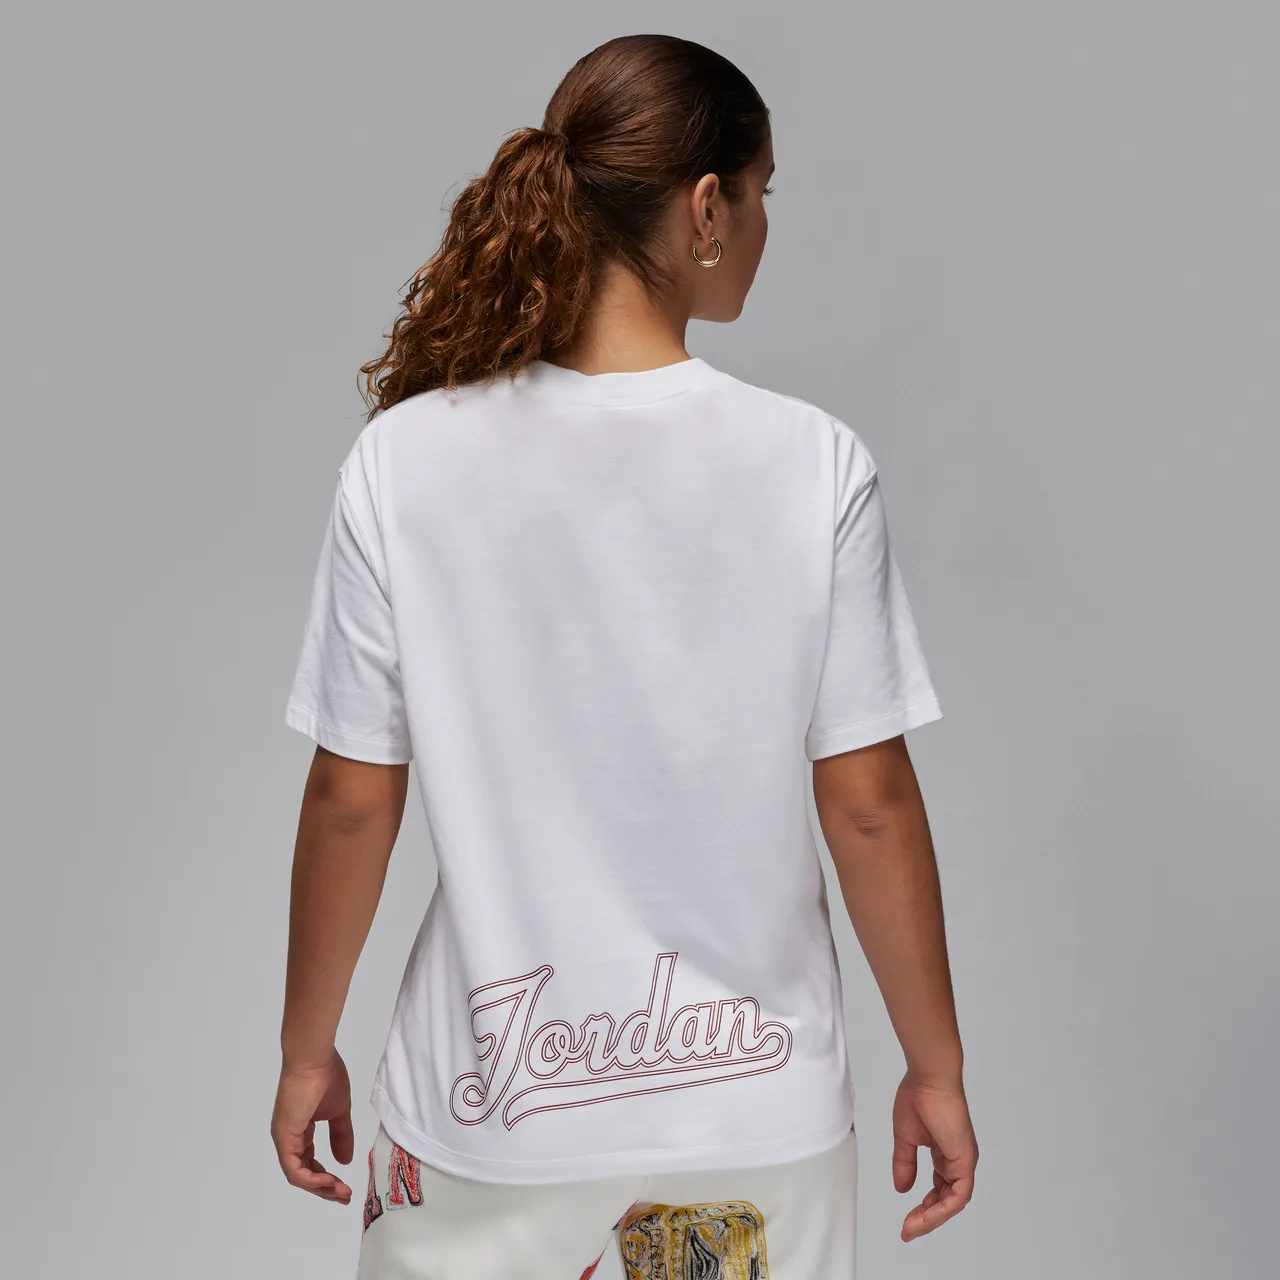 Jordan Women's T-Shirt - White - Cotton